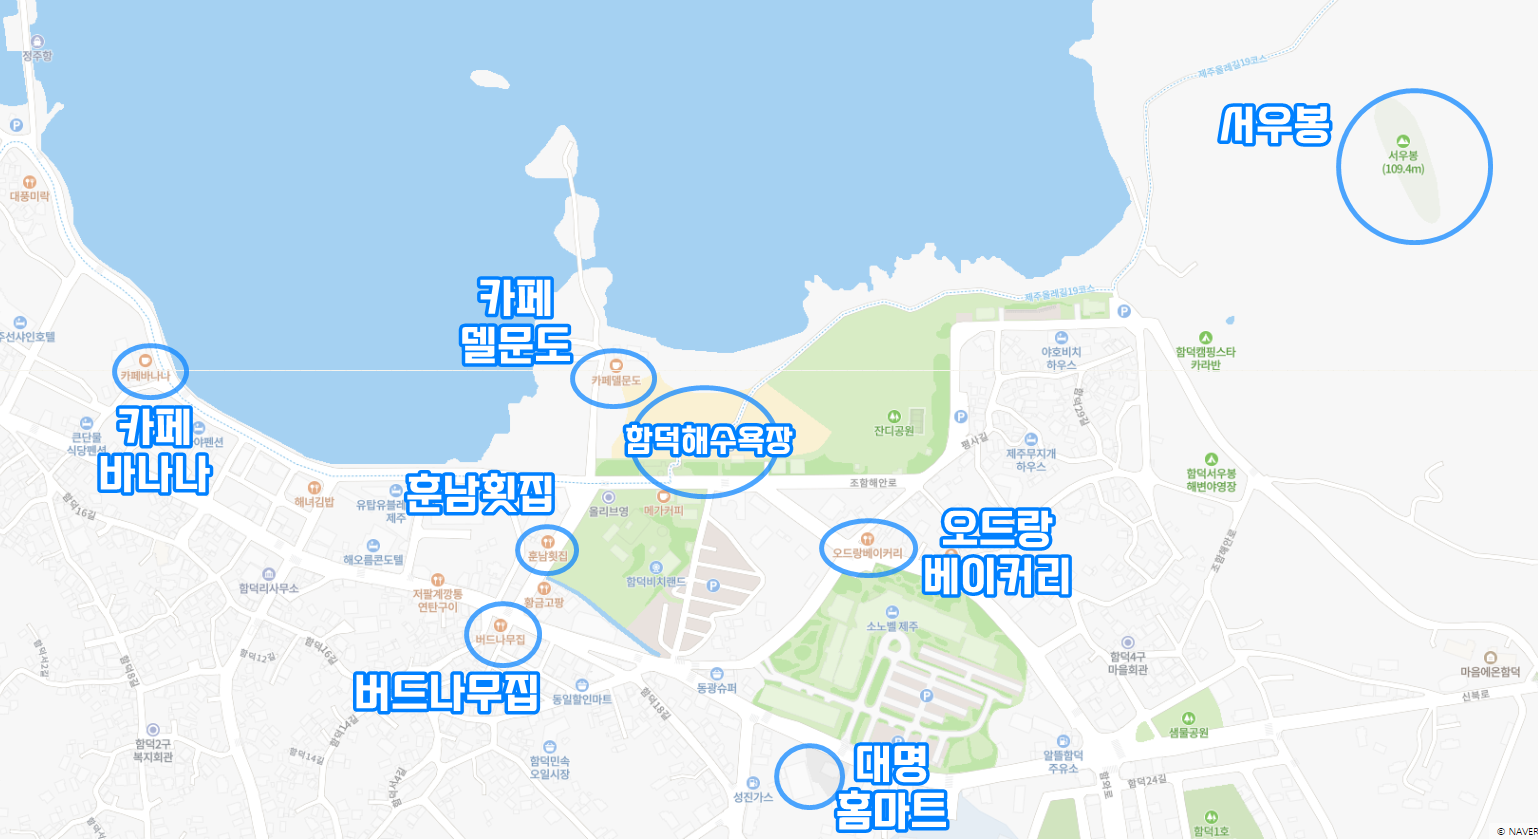 함덕 관광지 표시 지도